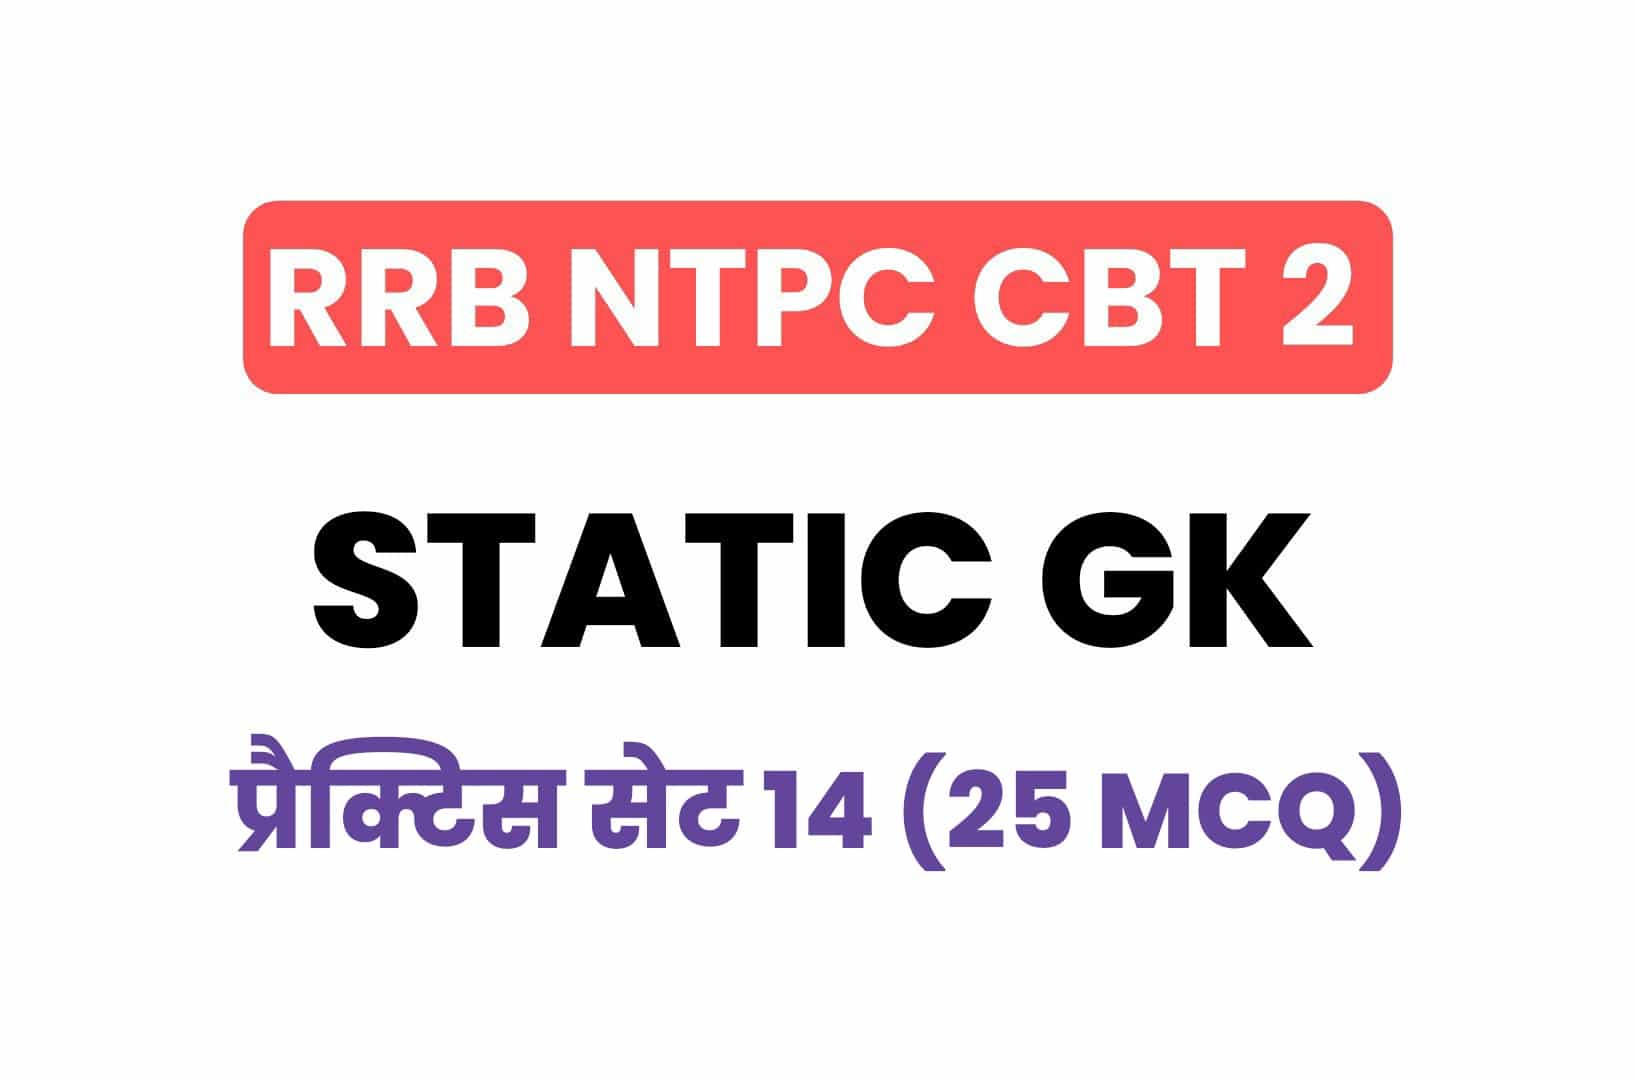 RRB NTPC CBT 2 Static GK प्रैक्टिस सेट 14: परीक्षा में पूछें गये महत्वपूर्ण प्रश्नों का संग्रह, पढ़ें